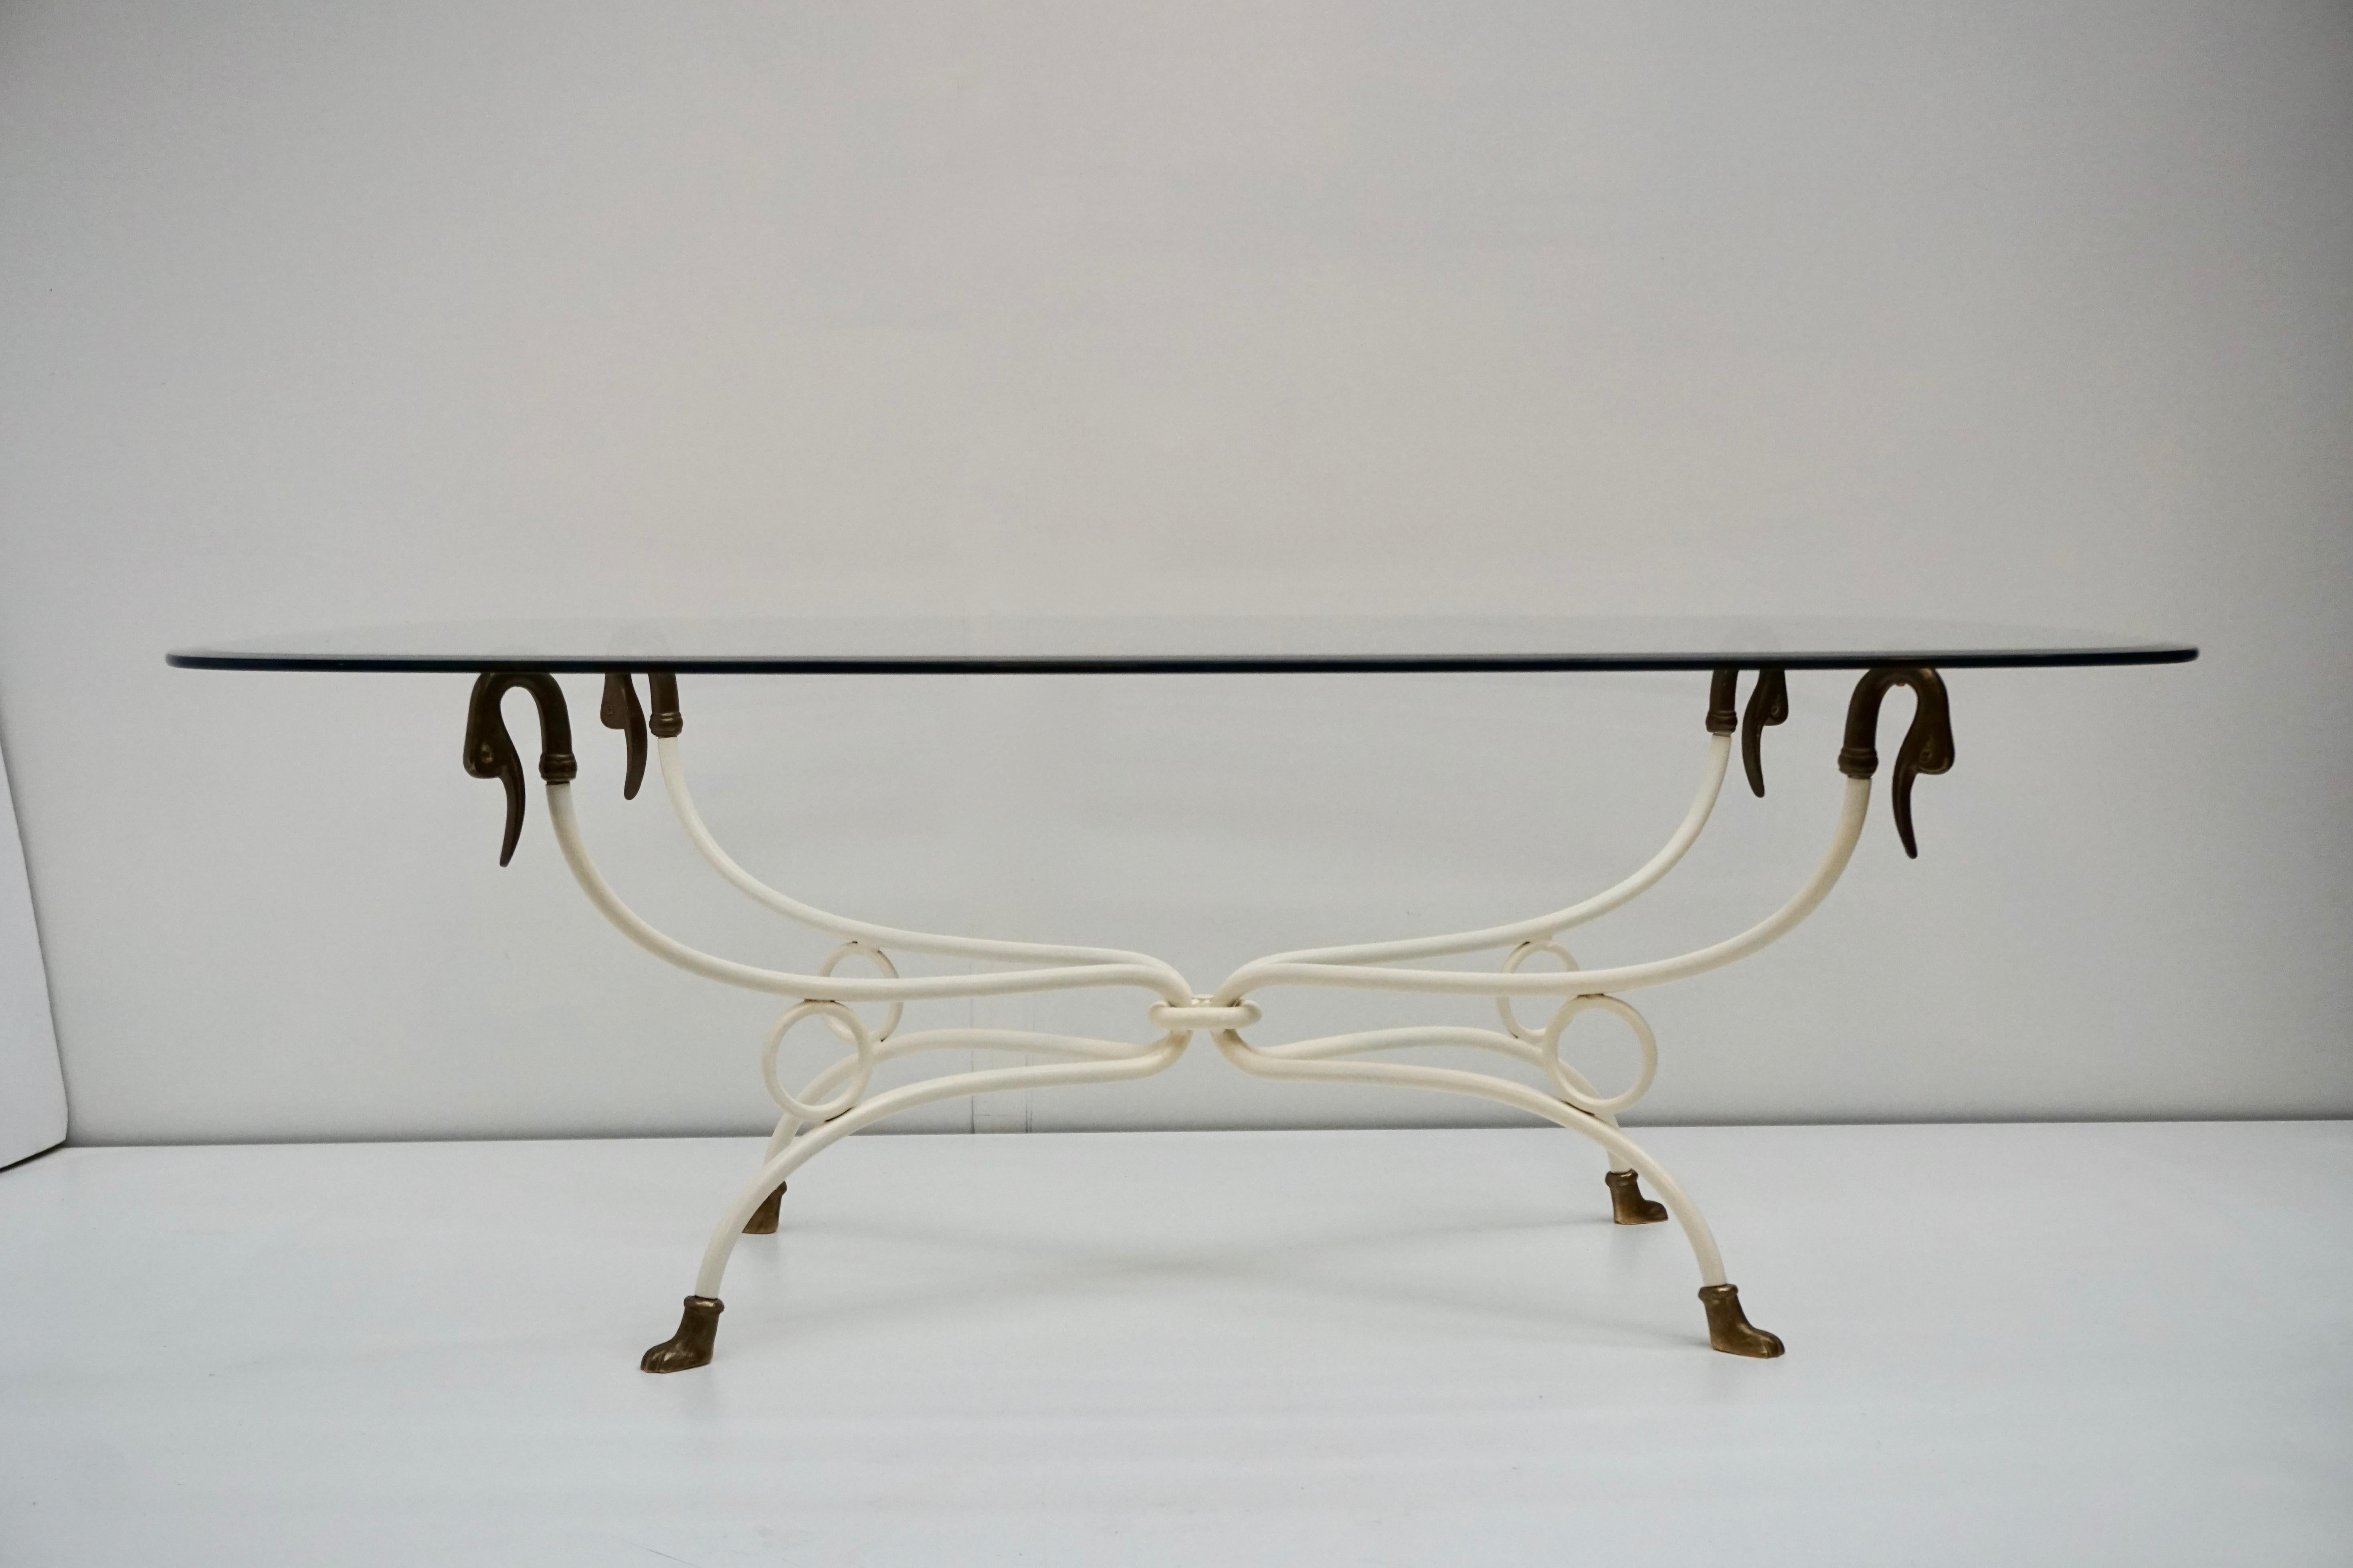 Une chic et élégante table basse italienne des années 1950 en laiton avec des pieds en tête de cygne et un verre original.
Bien fait et lourd.

Dimensions base :
Largeur 97 cm.
Profondeur 57 cm.
Hauteur 48 cm.